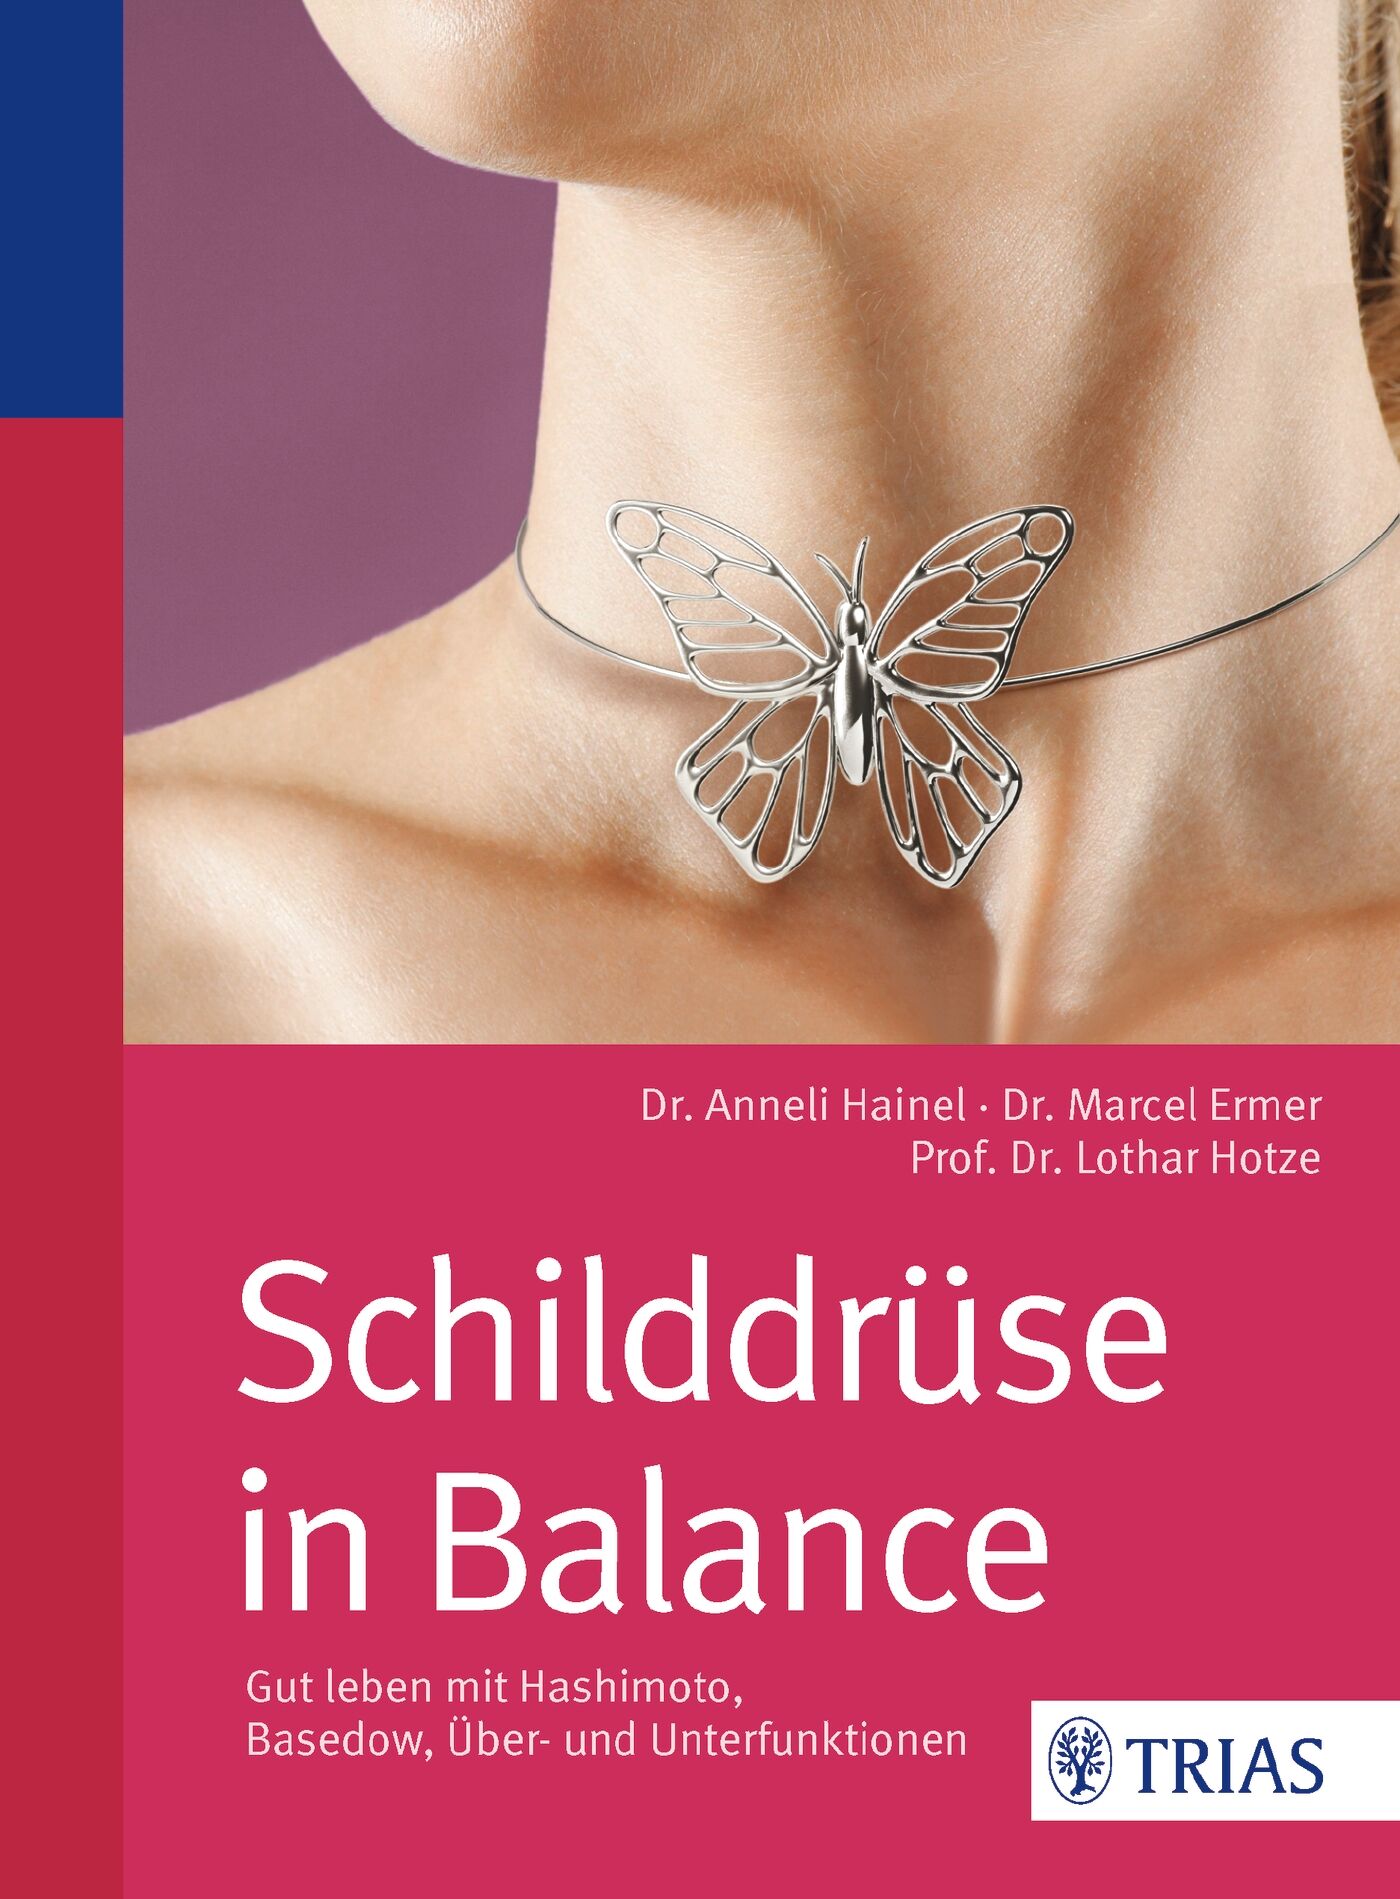 Schilddrüse in Balance, 9783830469339